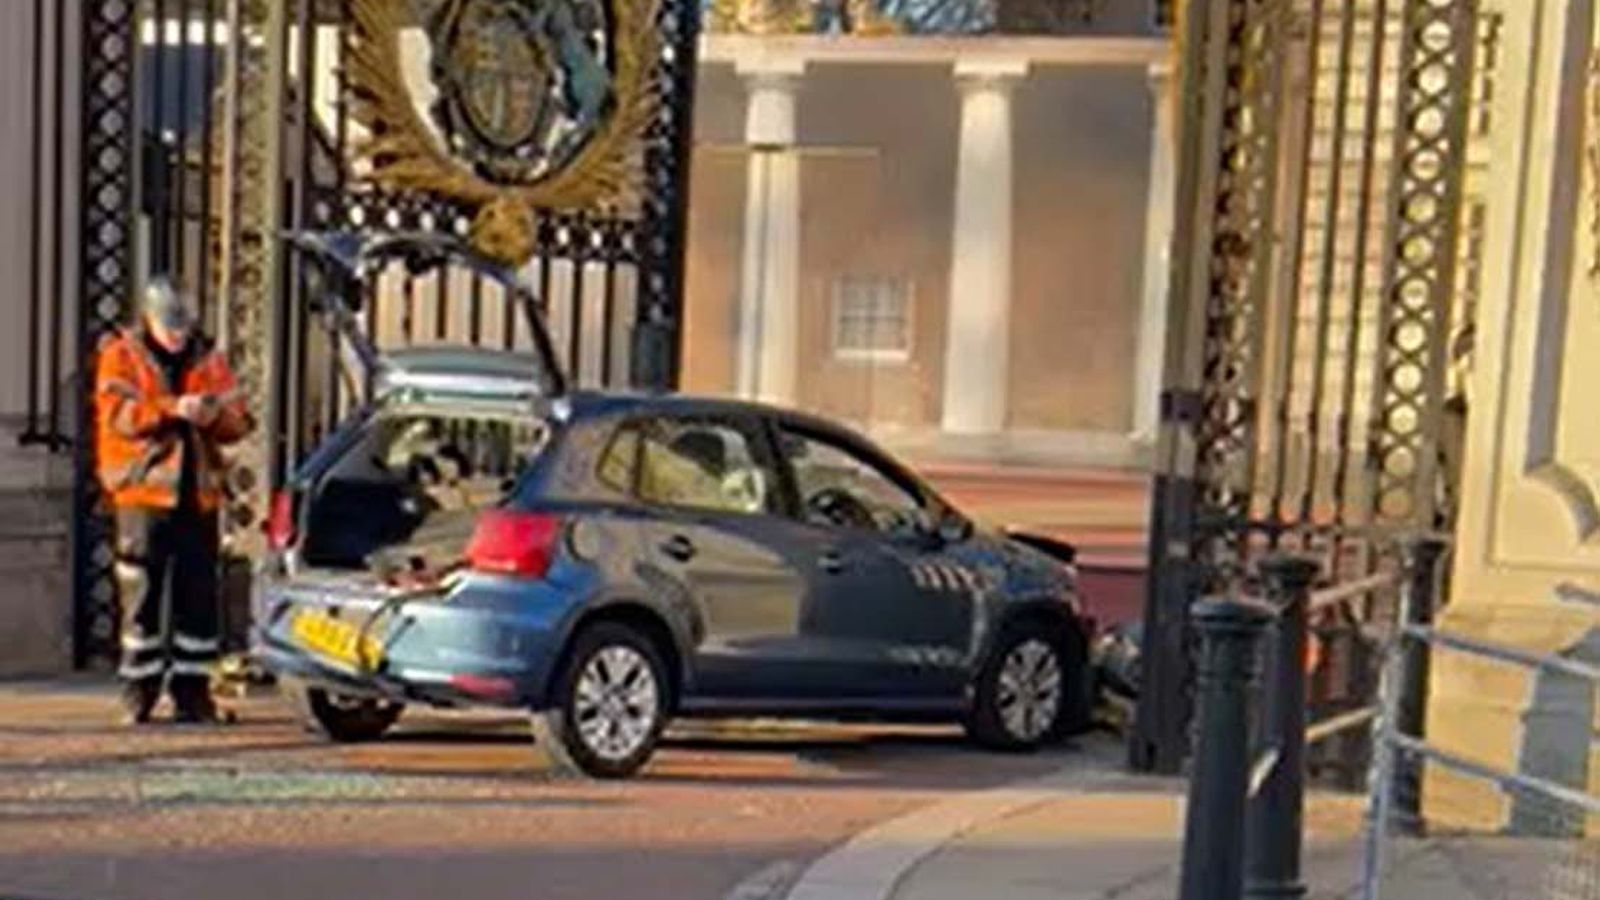 Man arrested after crashing car into Buckingham Palace gates